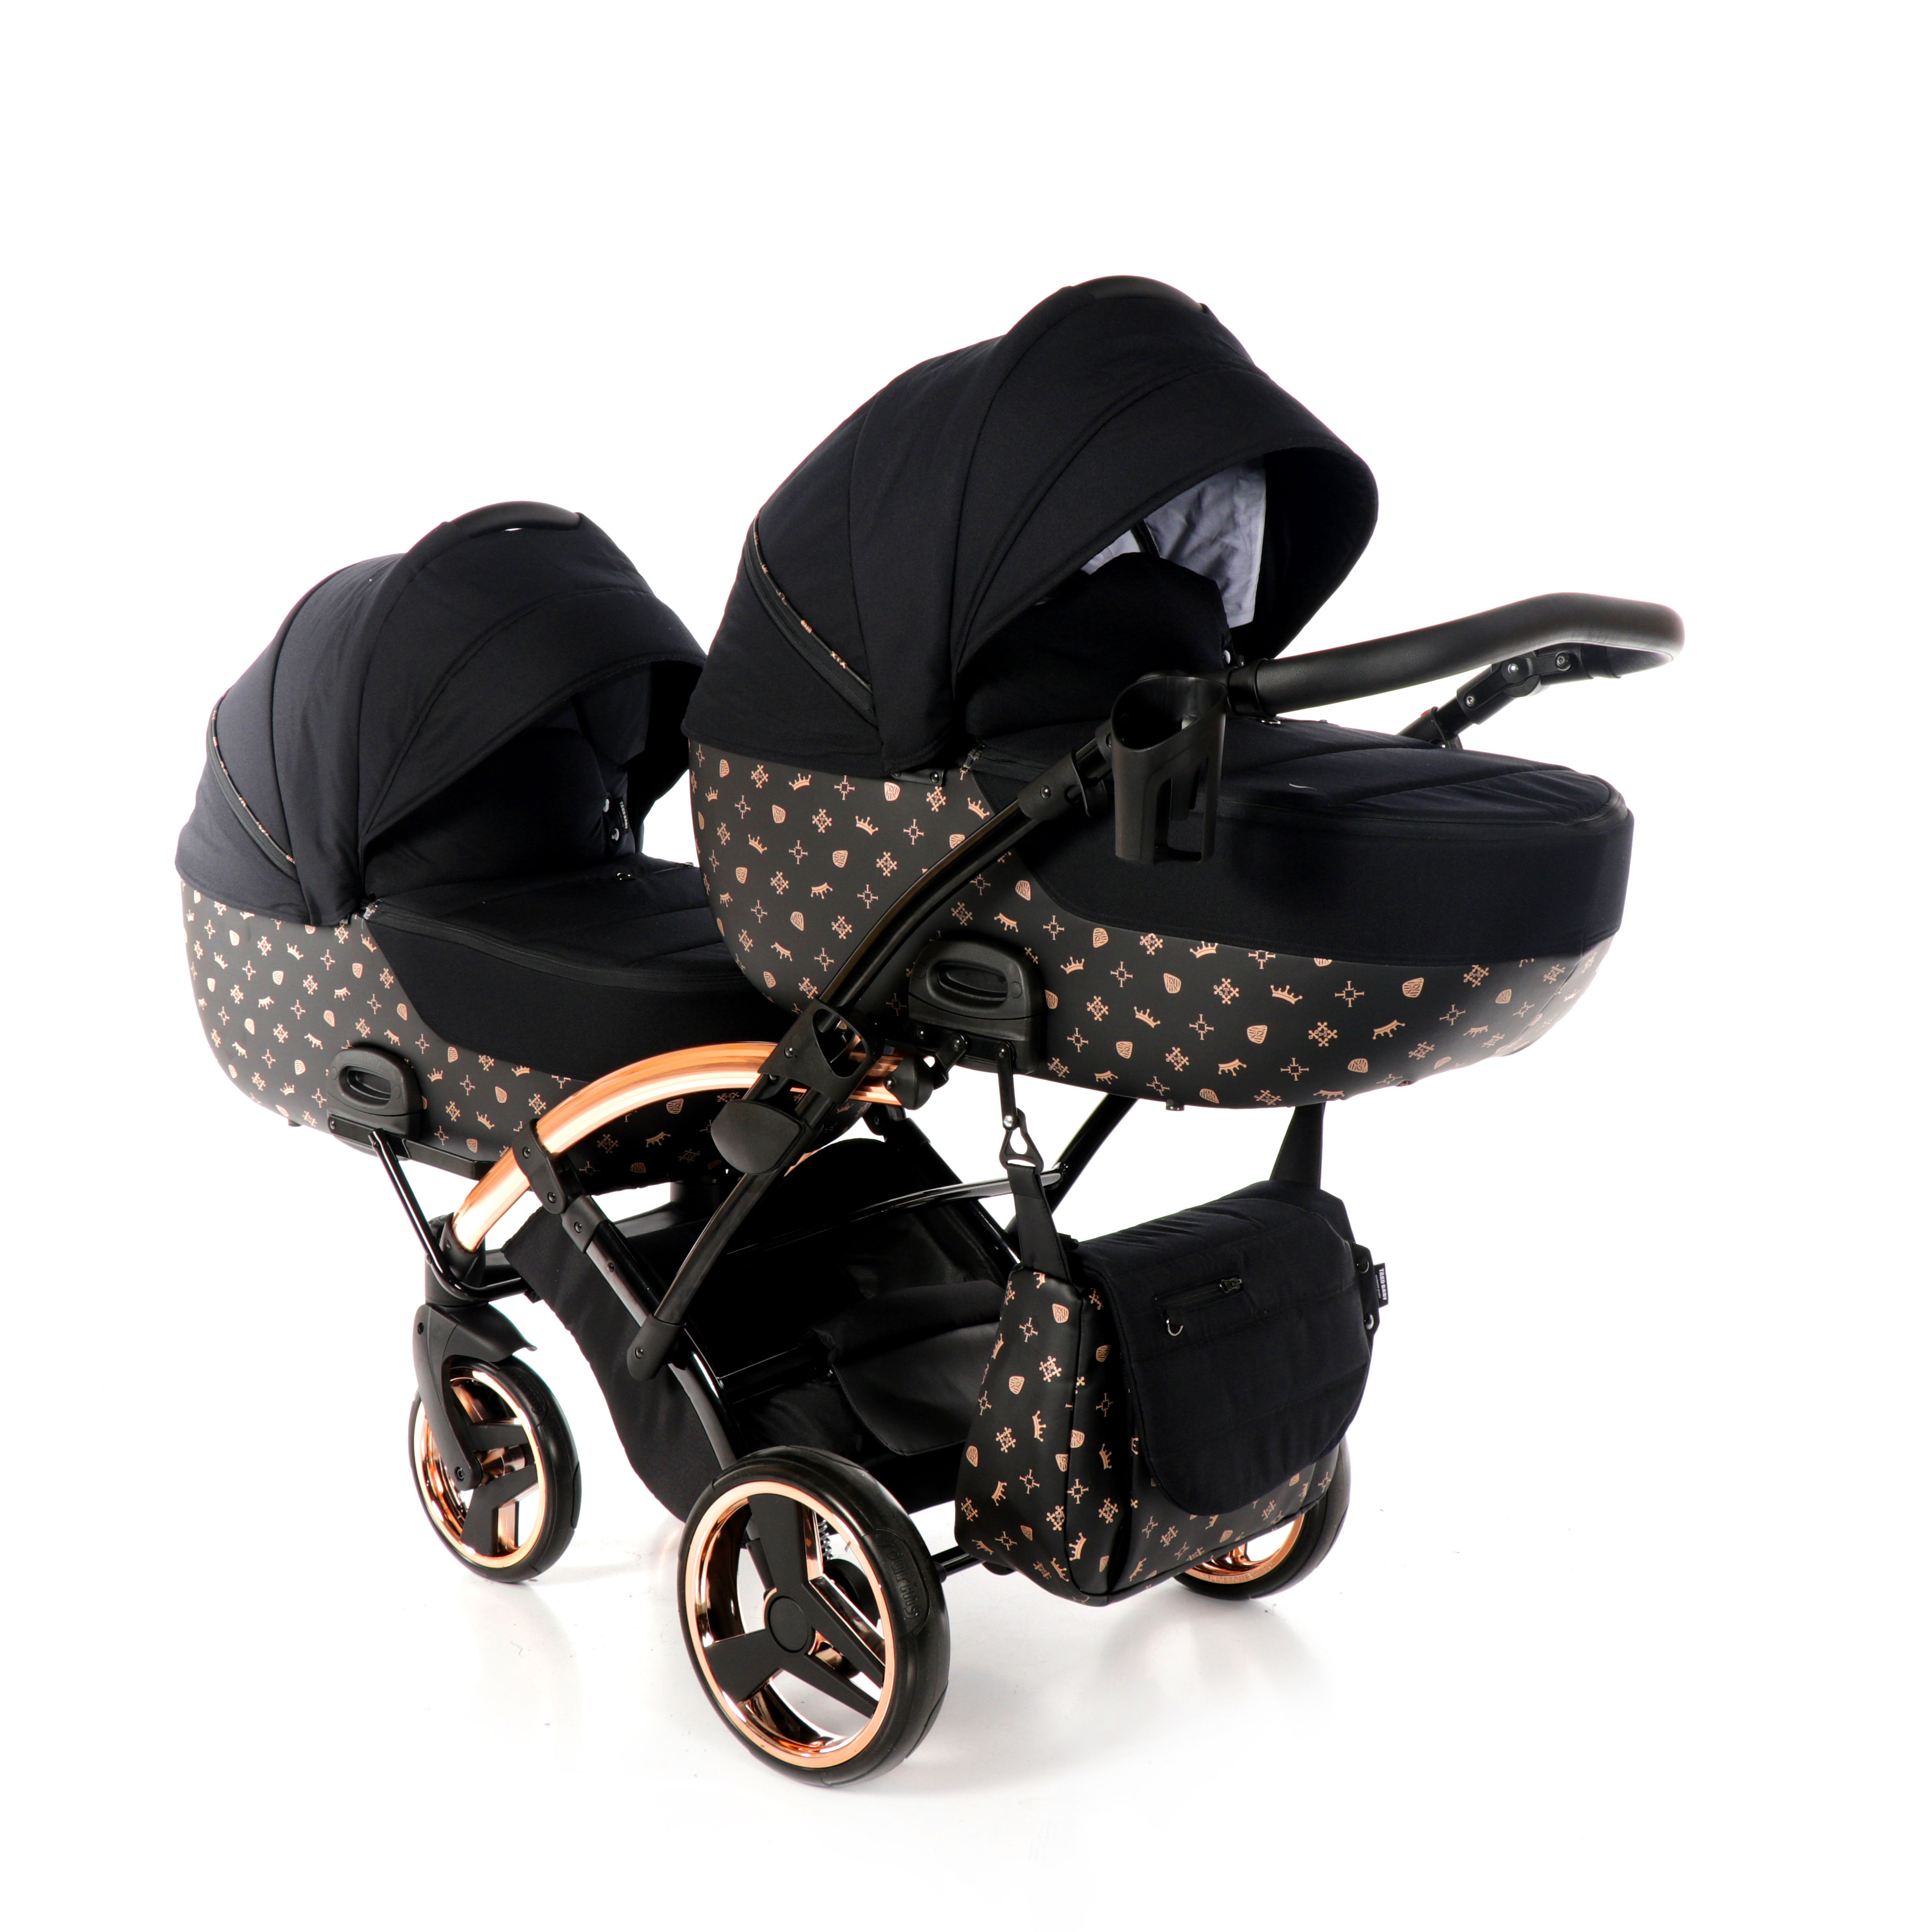 wózek blixniaczy Laret Imperial Duo wielofunkcyjny Tako elegancki nowoczesny wózek czarny Dadi Shop